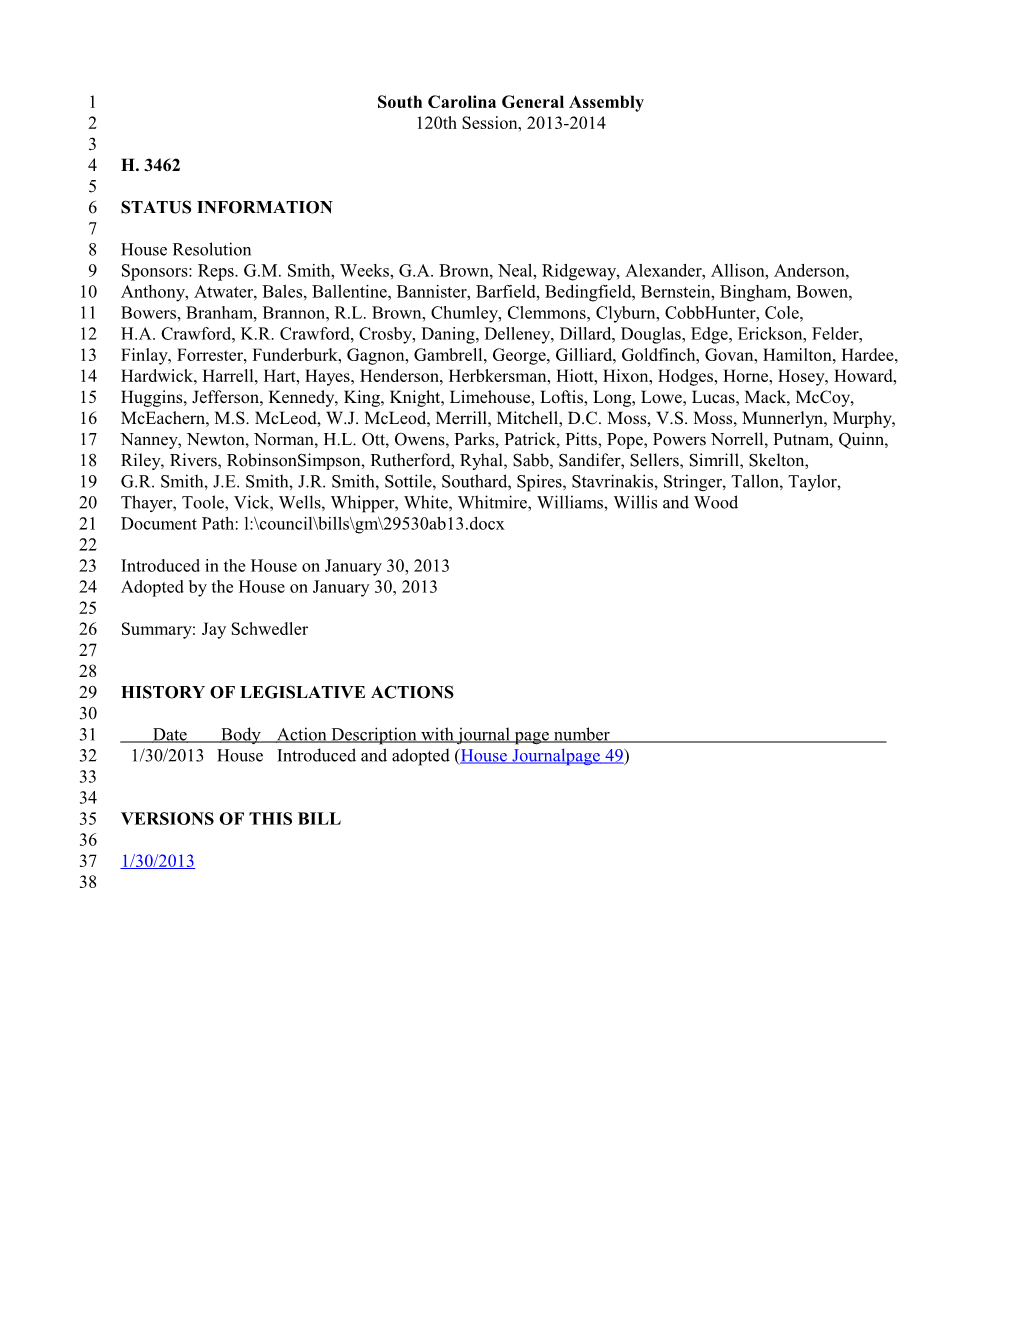 2013-2014 Bill 3462: Jay Schwedler - South Carolina Legislature Online